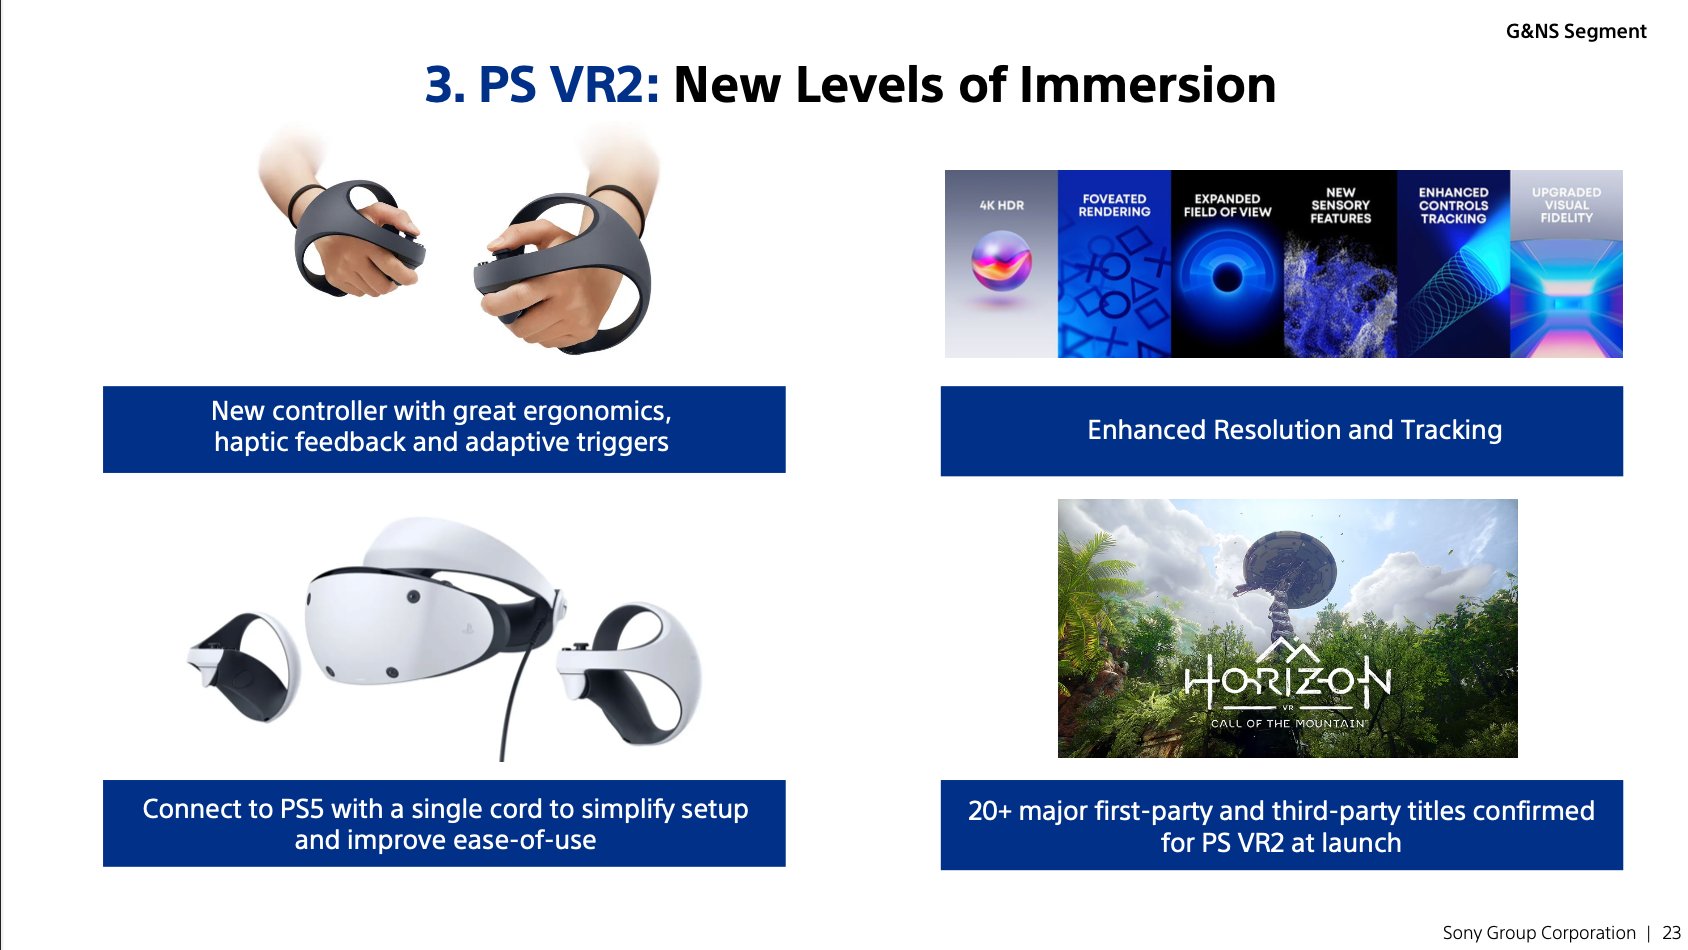 供应链分析师郭明錤爆料称PS VR2于今年下半年量产，明年发布